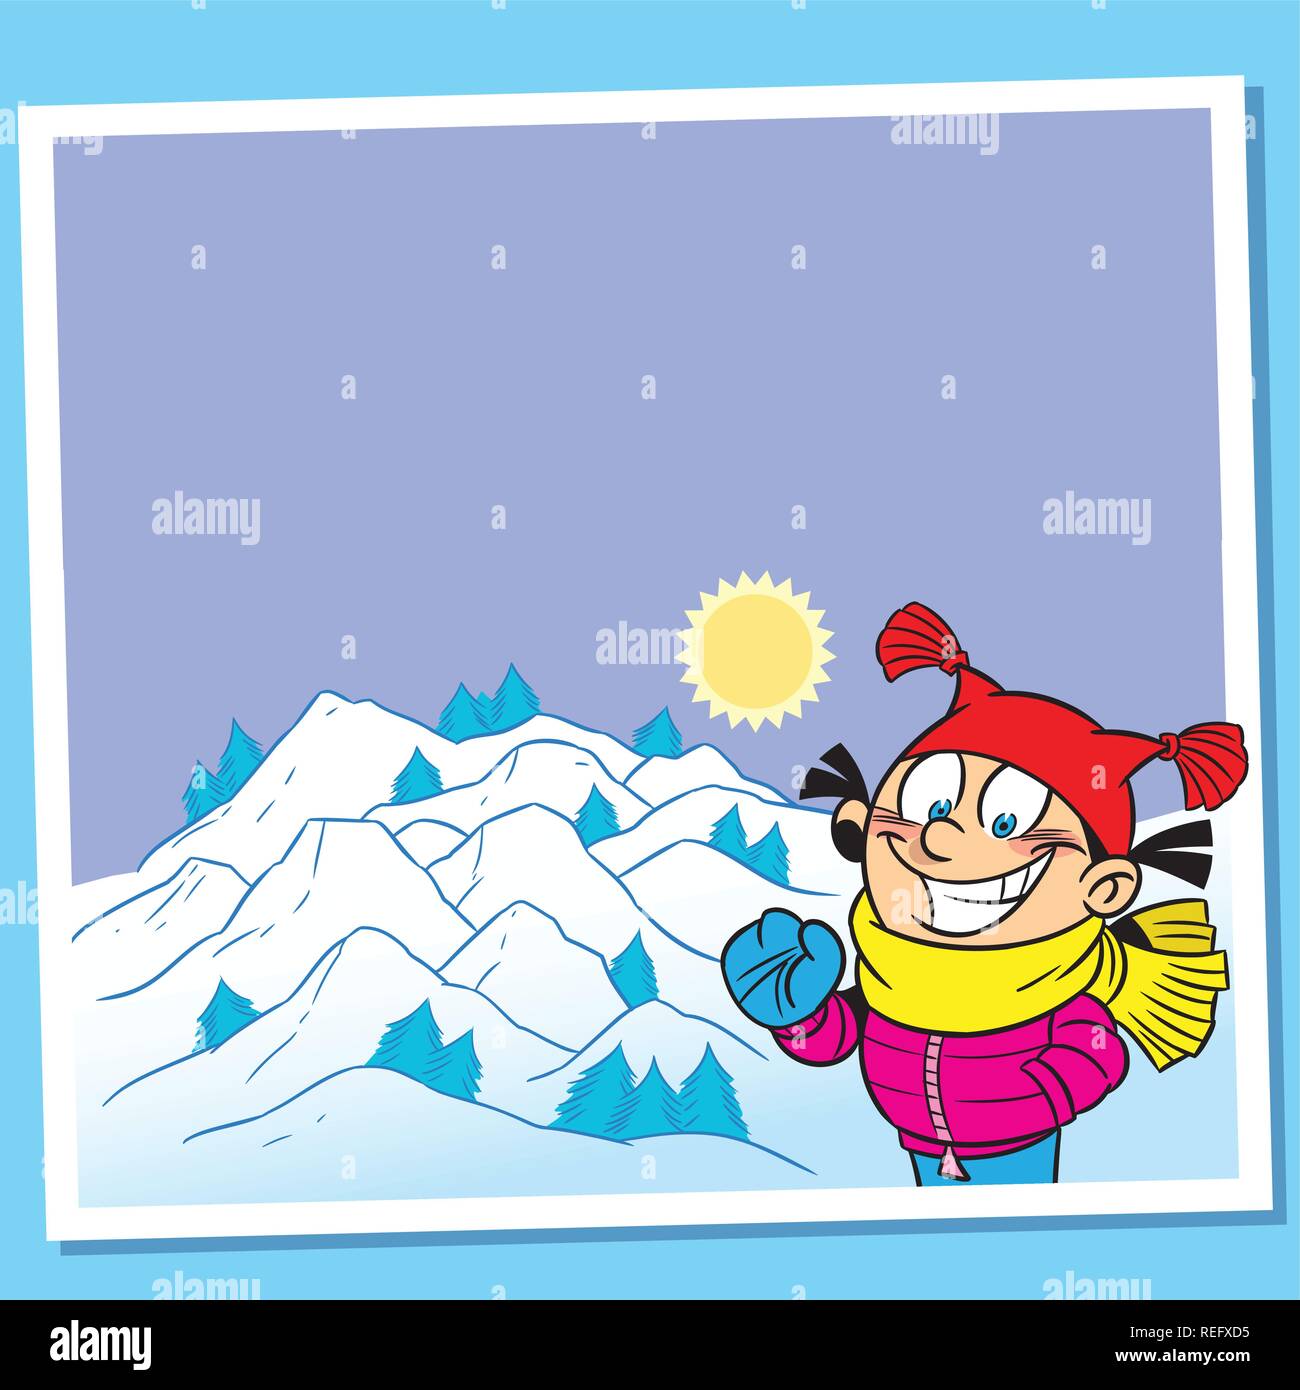 Illustrazione presentata sotto forma di cartoline turistiche. Sulla scheda mostra una ragazza con un saluto sullo sfondo di montagne innevate. Illustrazione Vettoriale